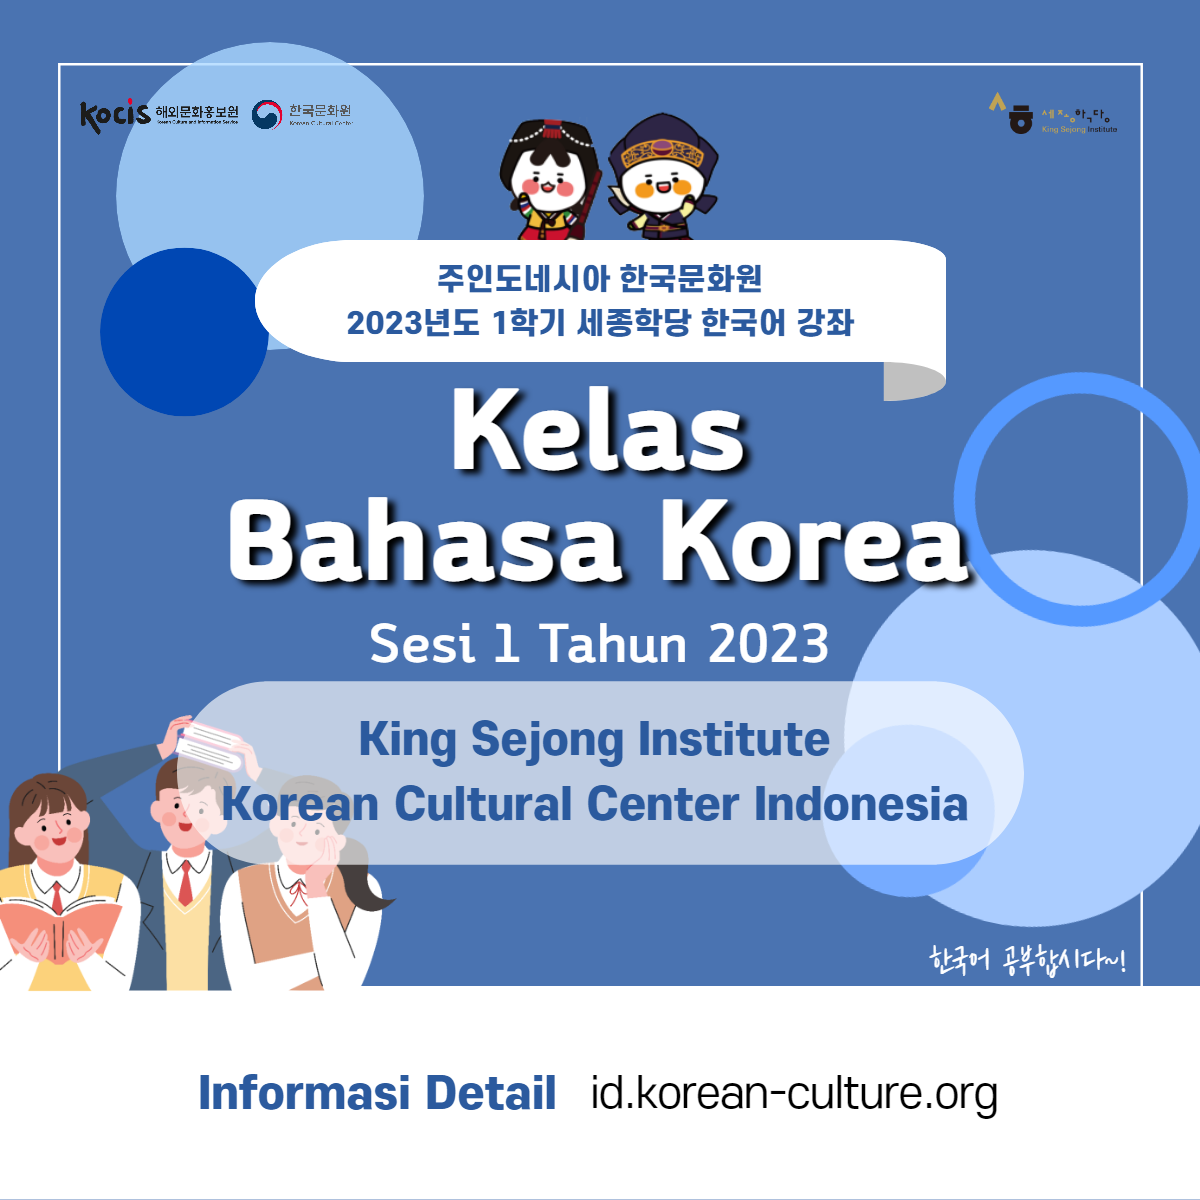 Salam-Korea-Kelas-Bahasa-Korea-KSI-KCCI